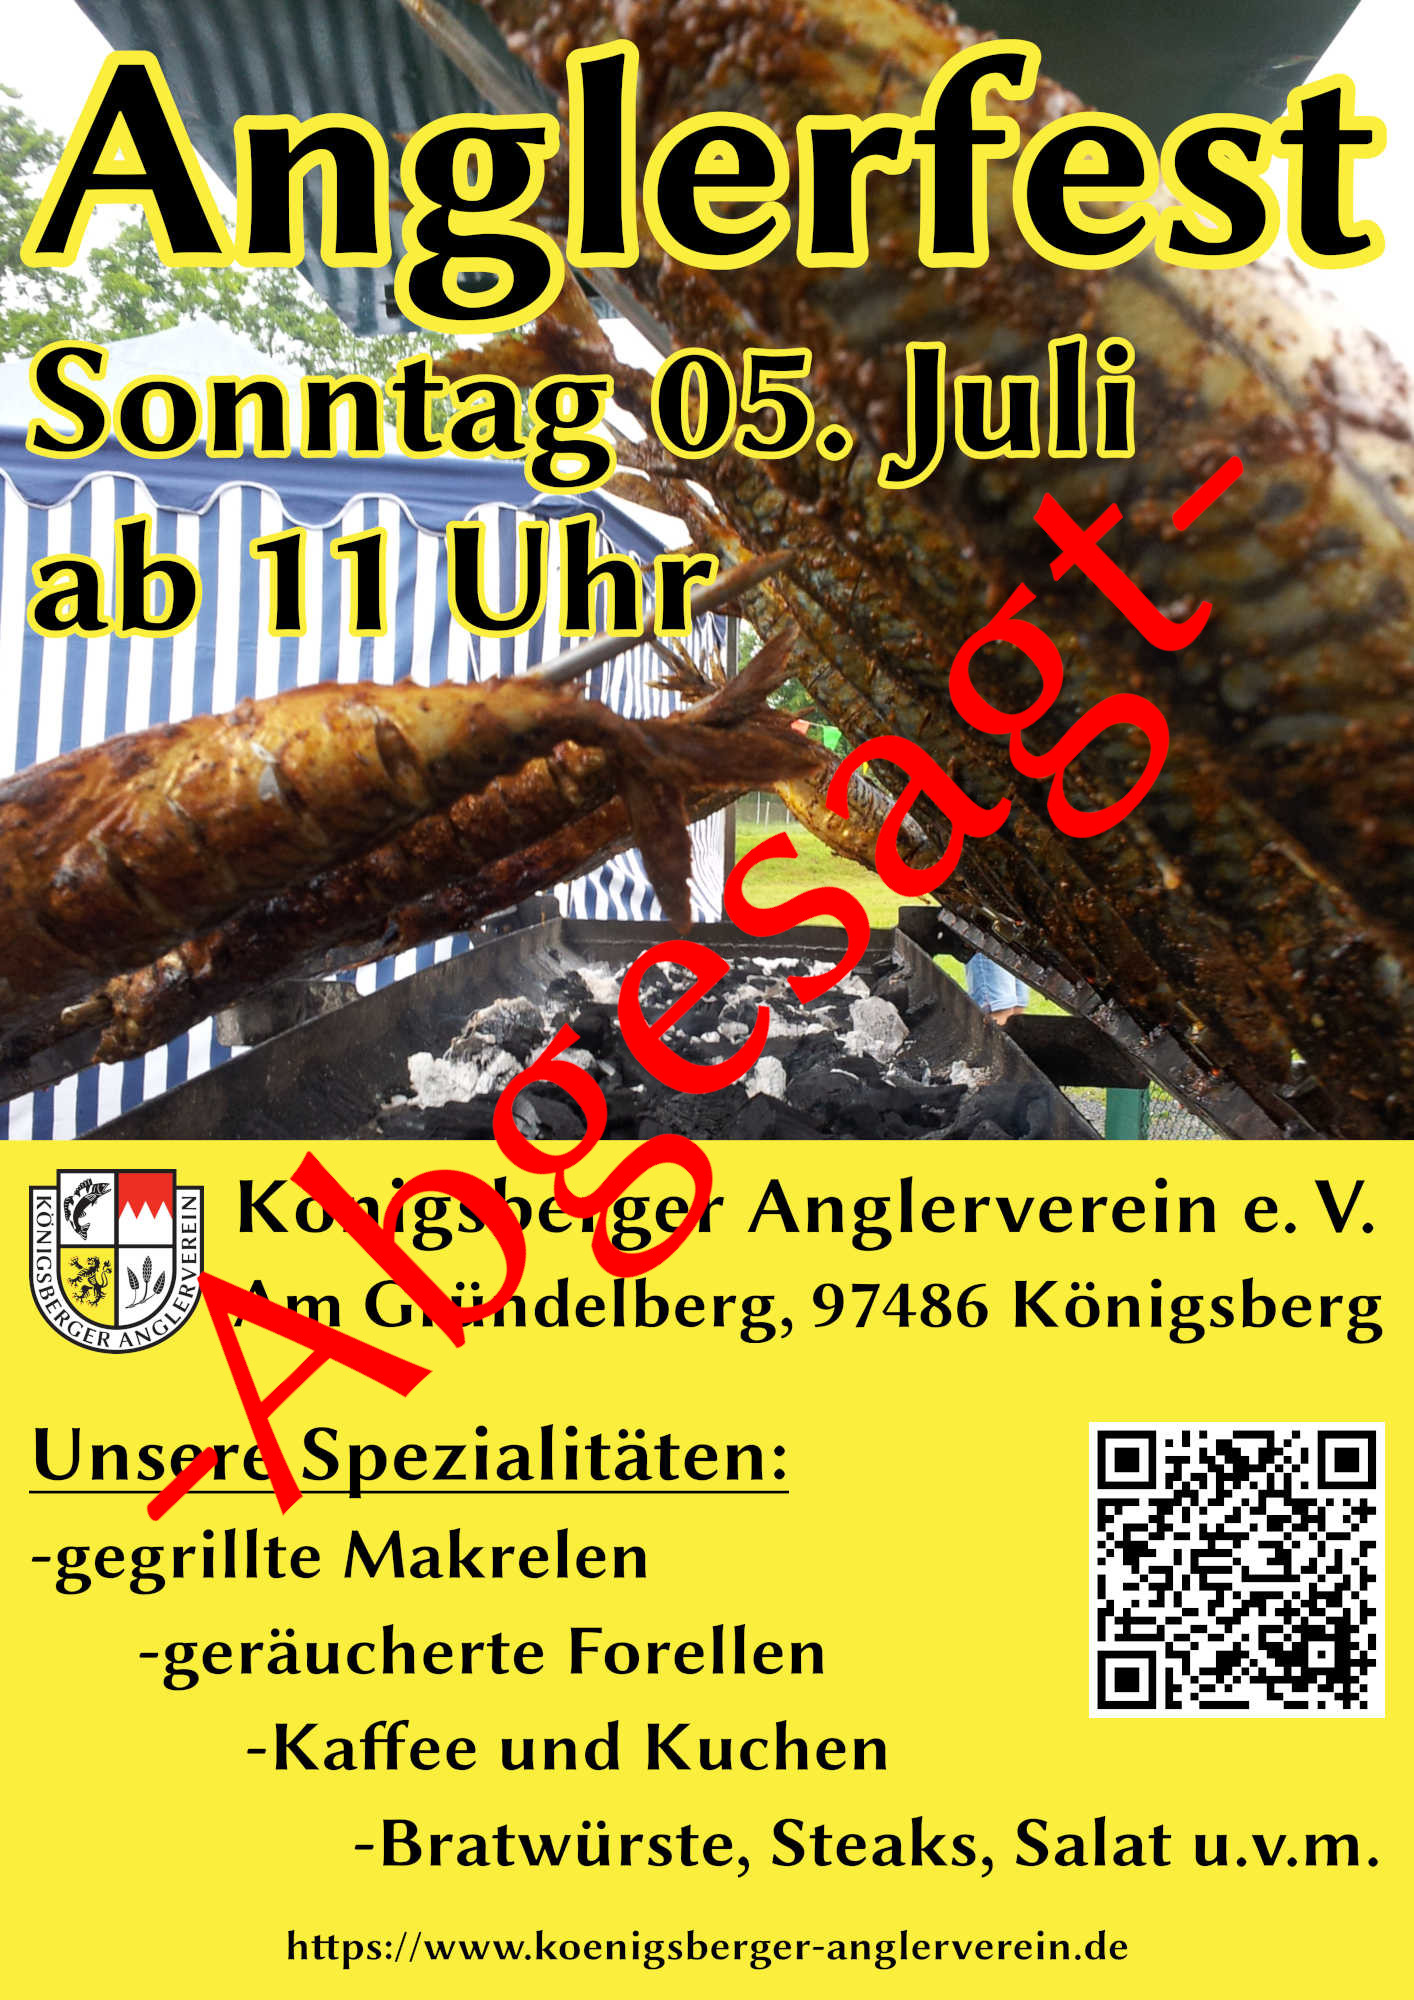 news/img/Anglerfest des Königsberger Anglervereins e. V. am 05. Juli, Am Gründelberg 97486 Königsberg